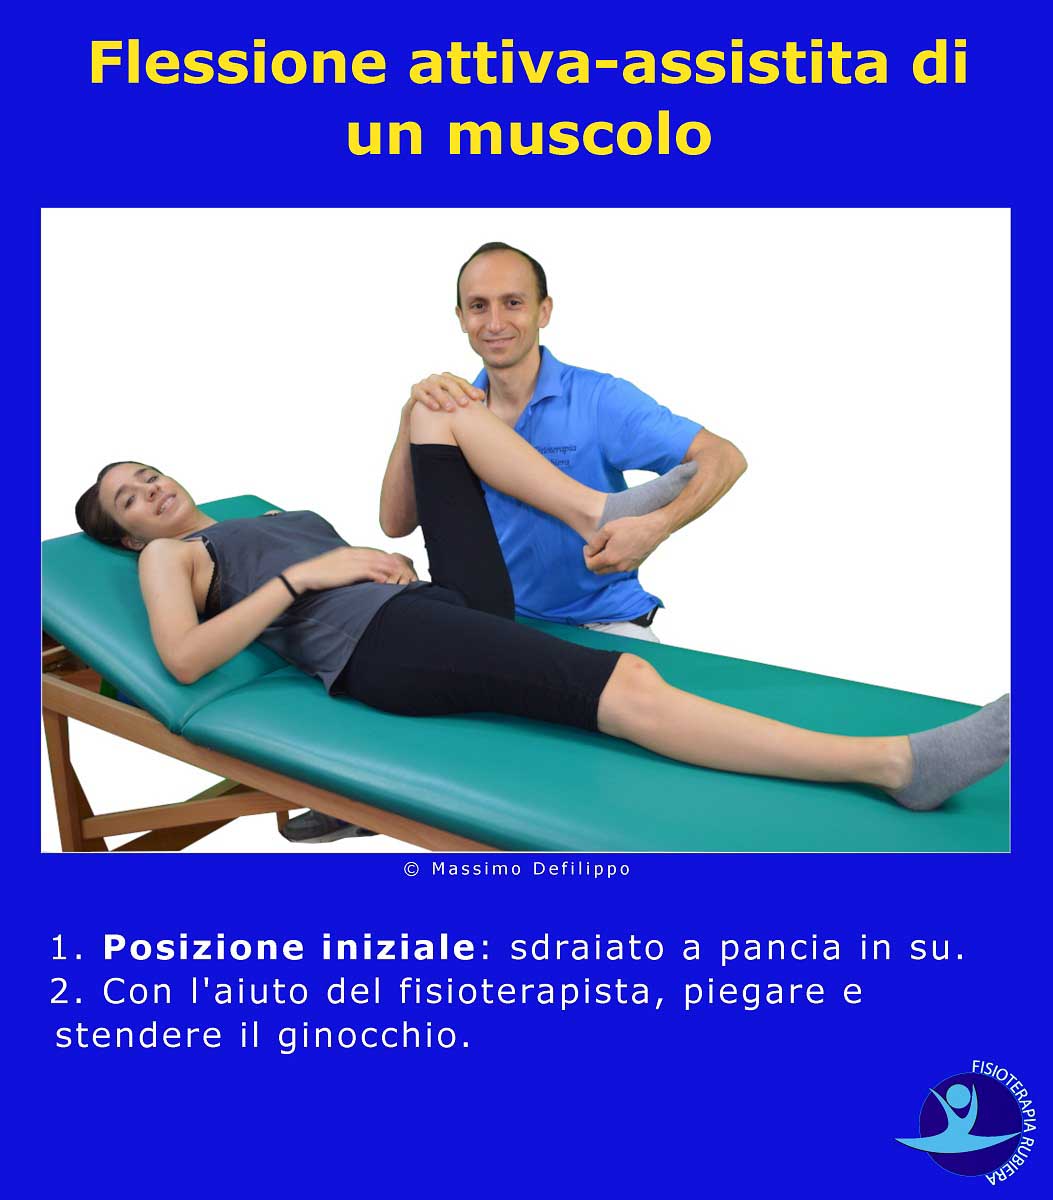 Flessione attiva-assistita-ginocchio